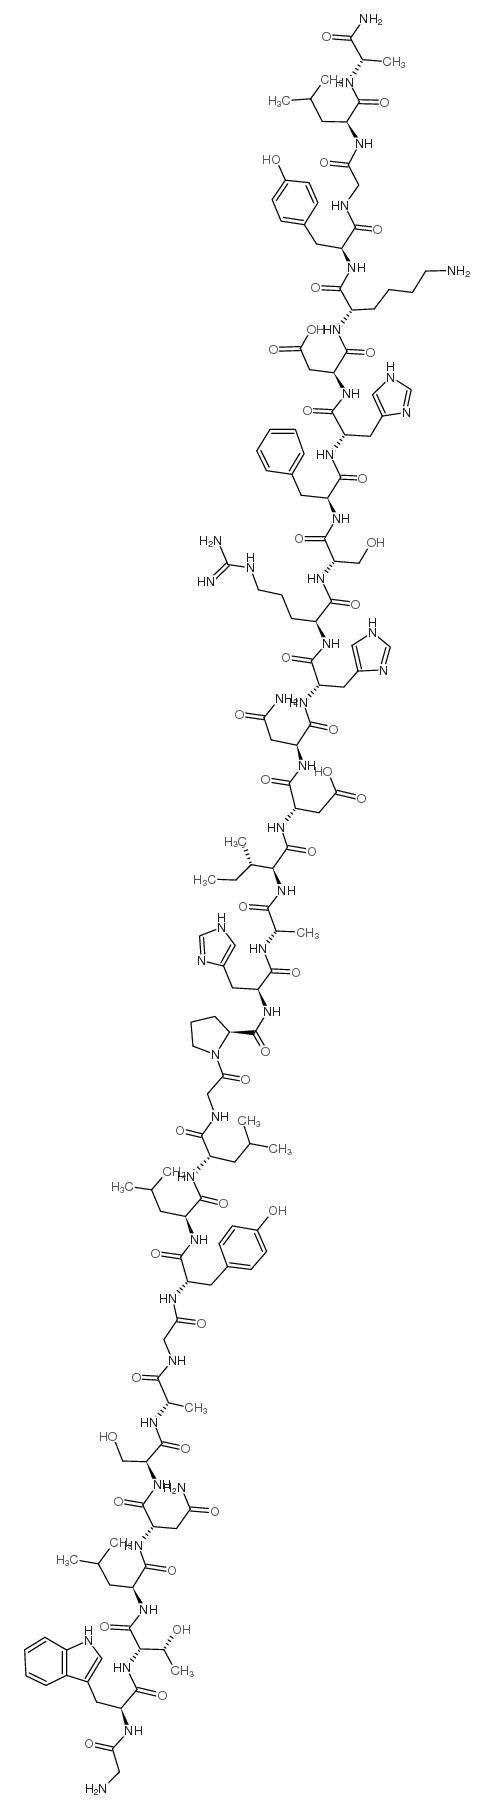 Galanin (porcine) trifluoroacetate salt structure